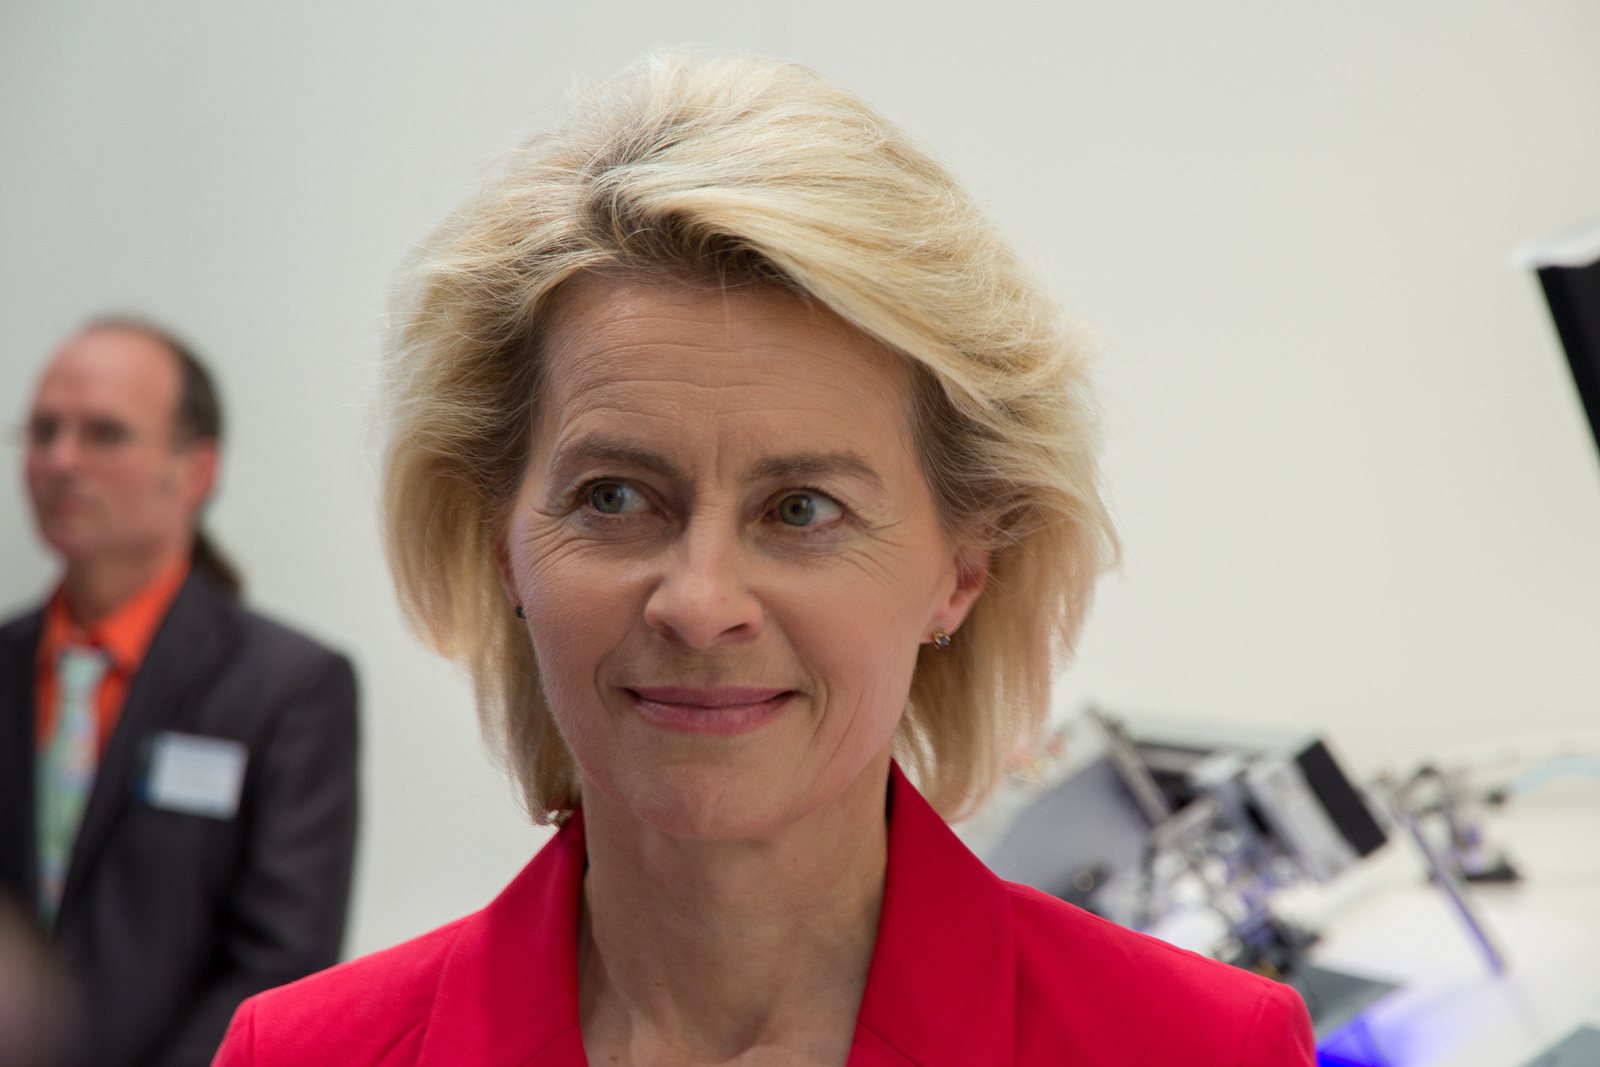 Ursula von der Leyen unveils new European Commission Emerging Europe